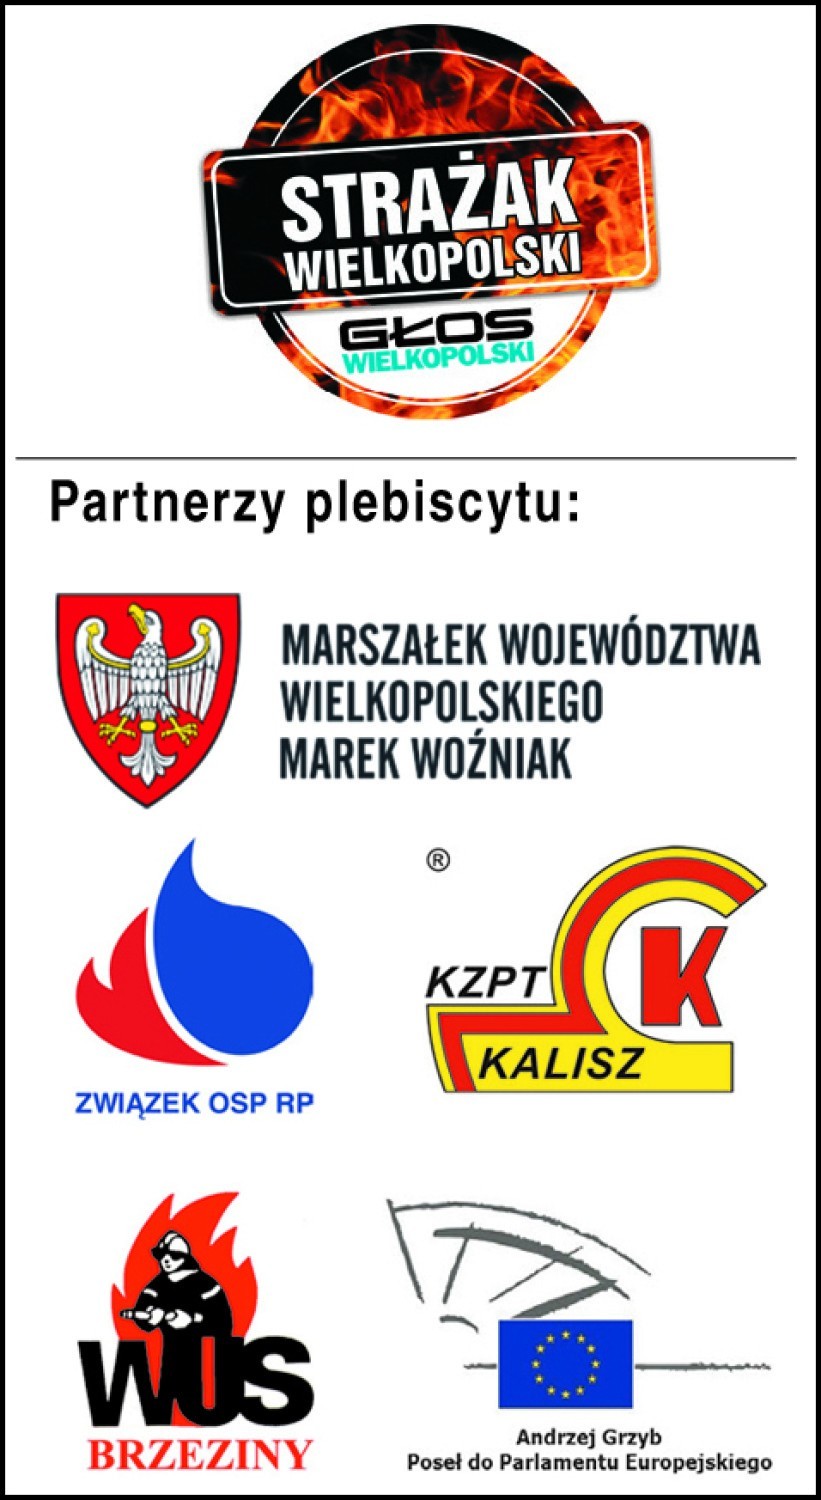 Strażak Wielkopolski 2014 - zgłoś kandydata